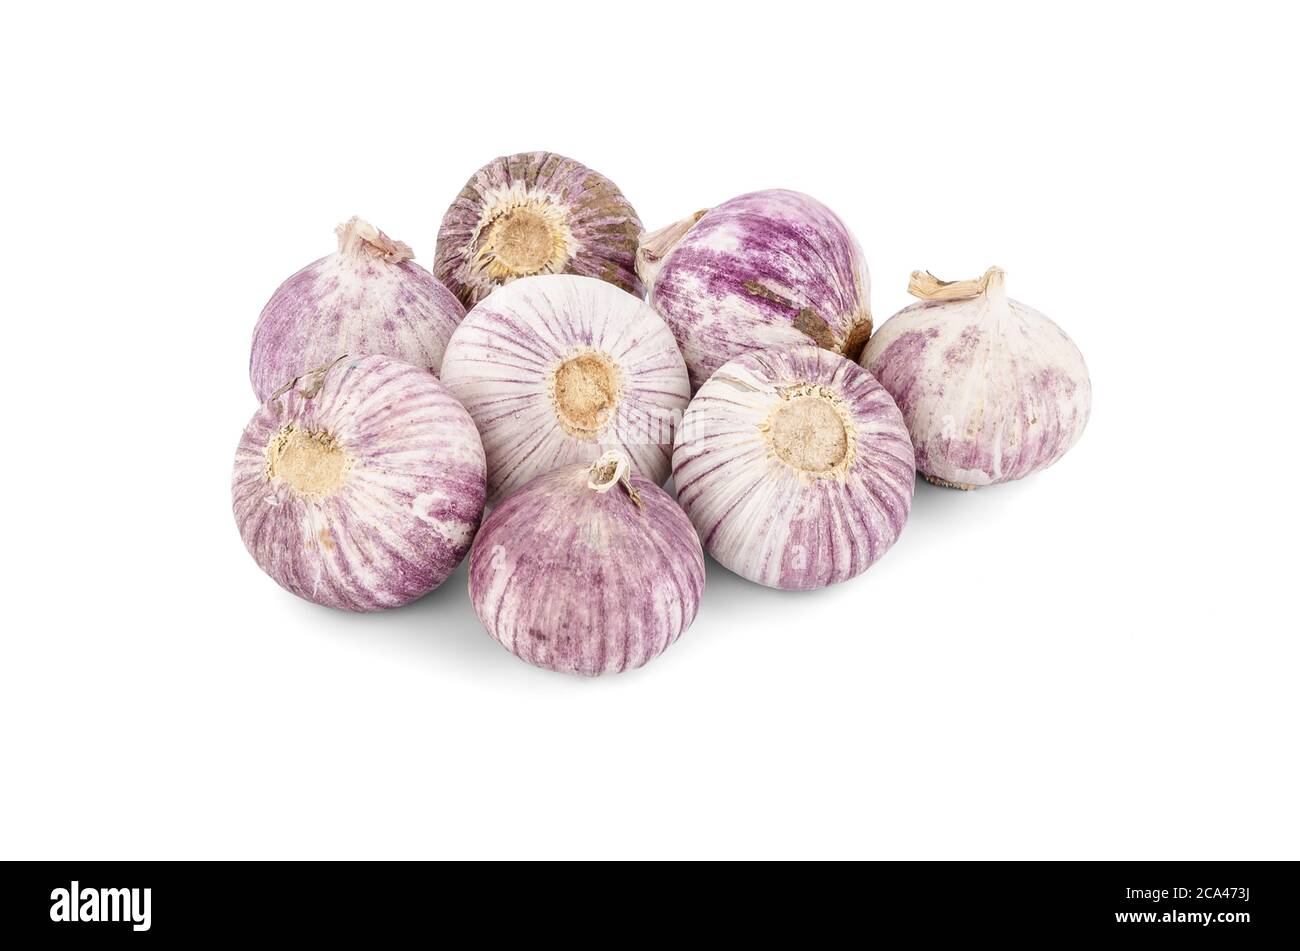 Garlics isolated on white background. Stock Photo